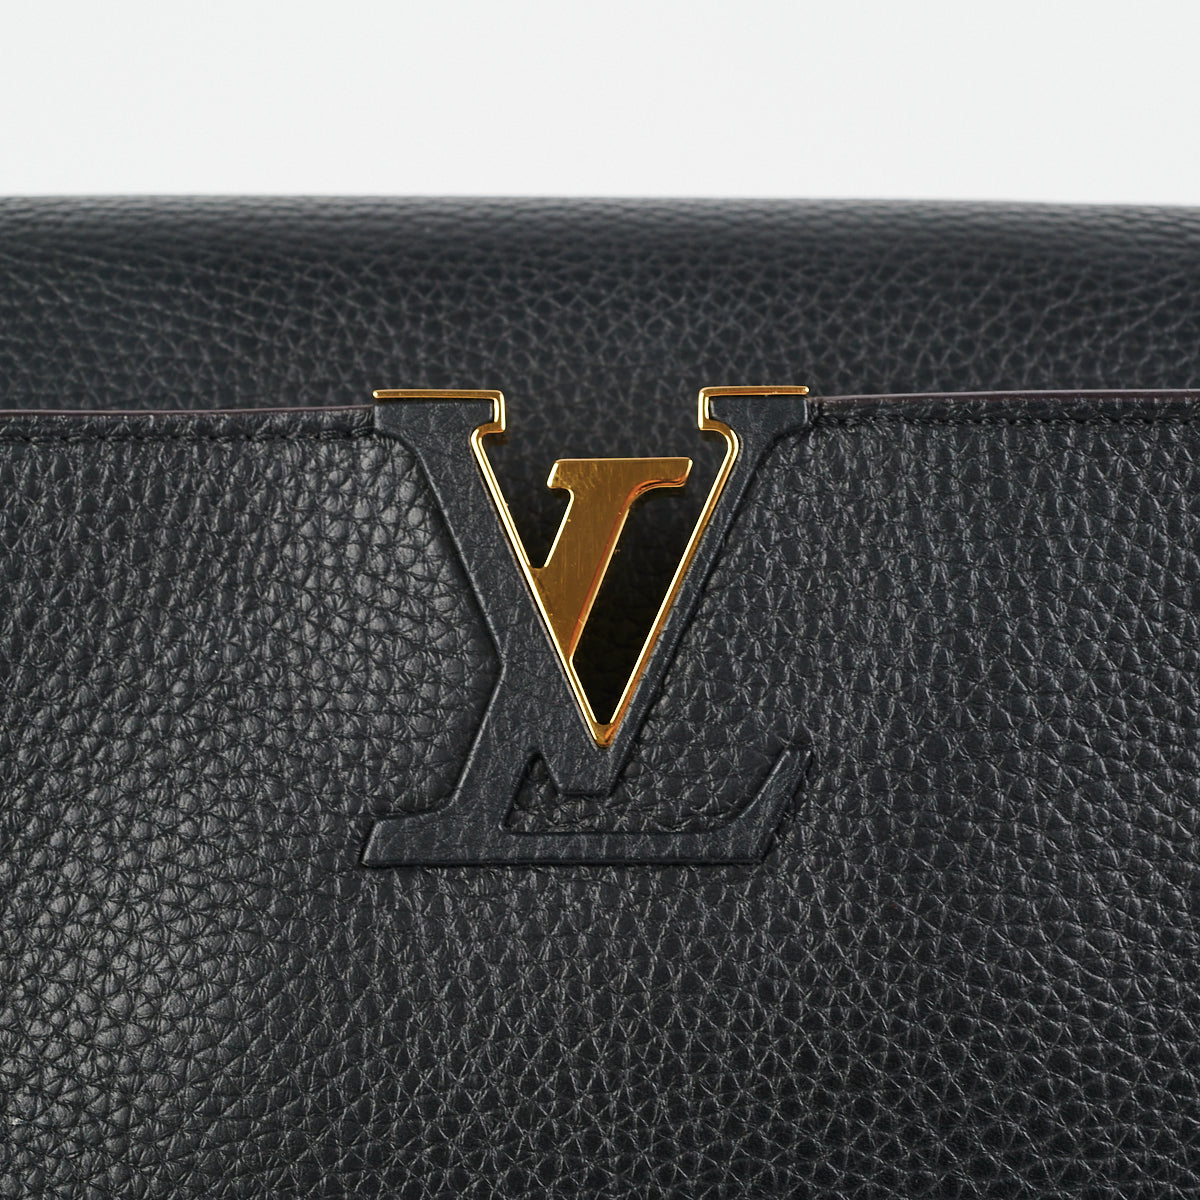 Louis Vuitton Beige Taurillon Leather Capucines GM Bag Louis Vuitton